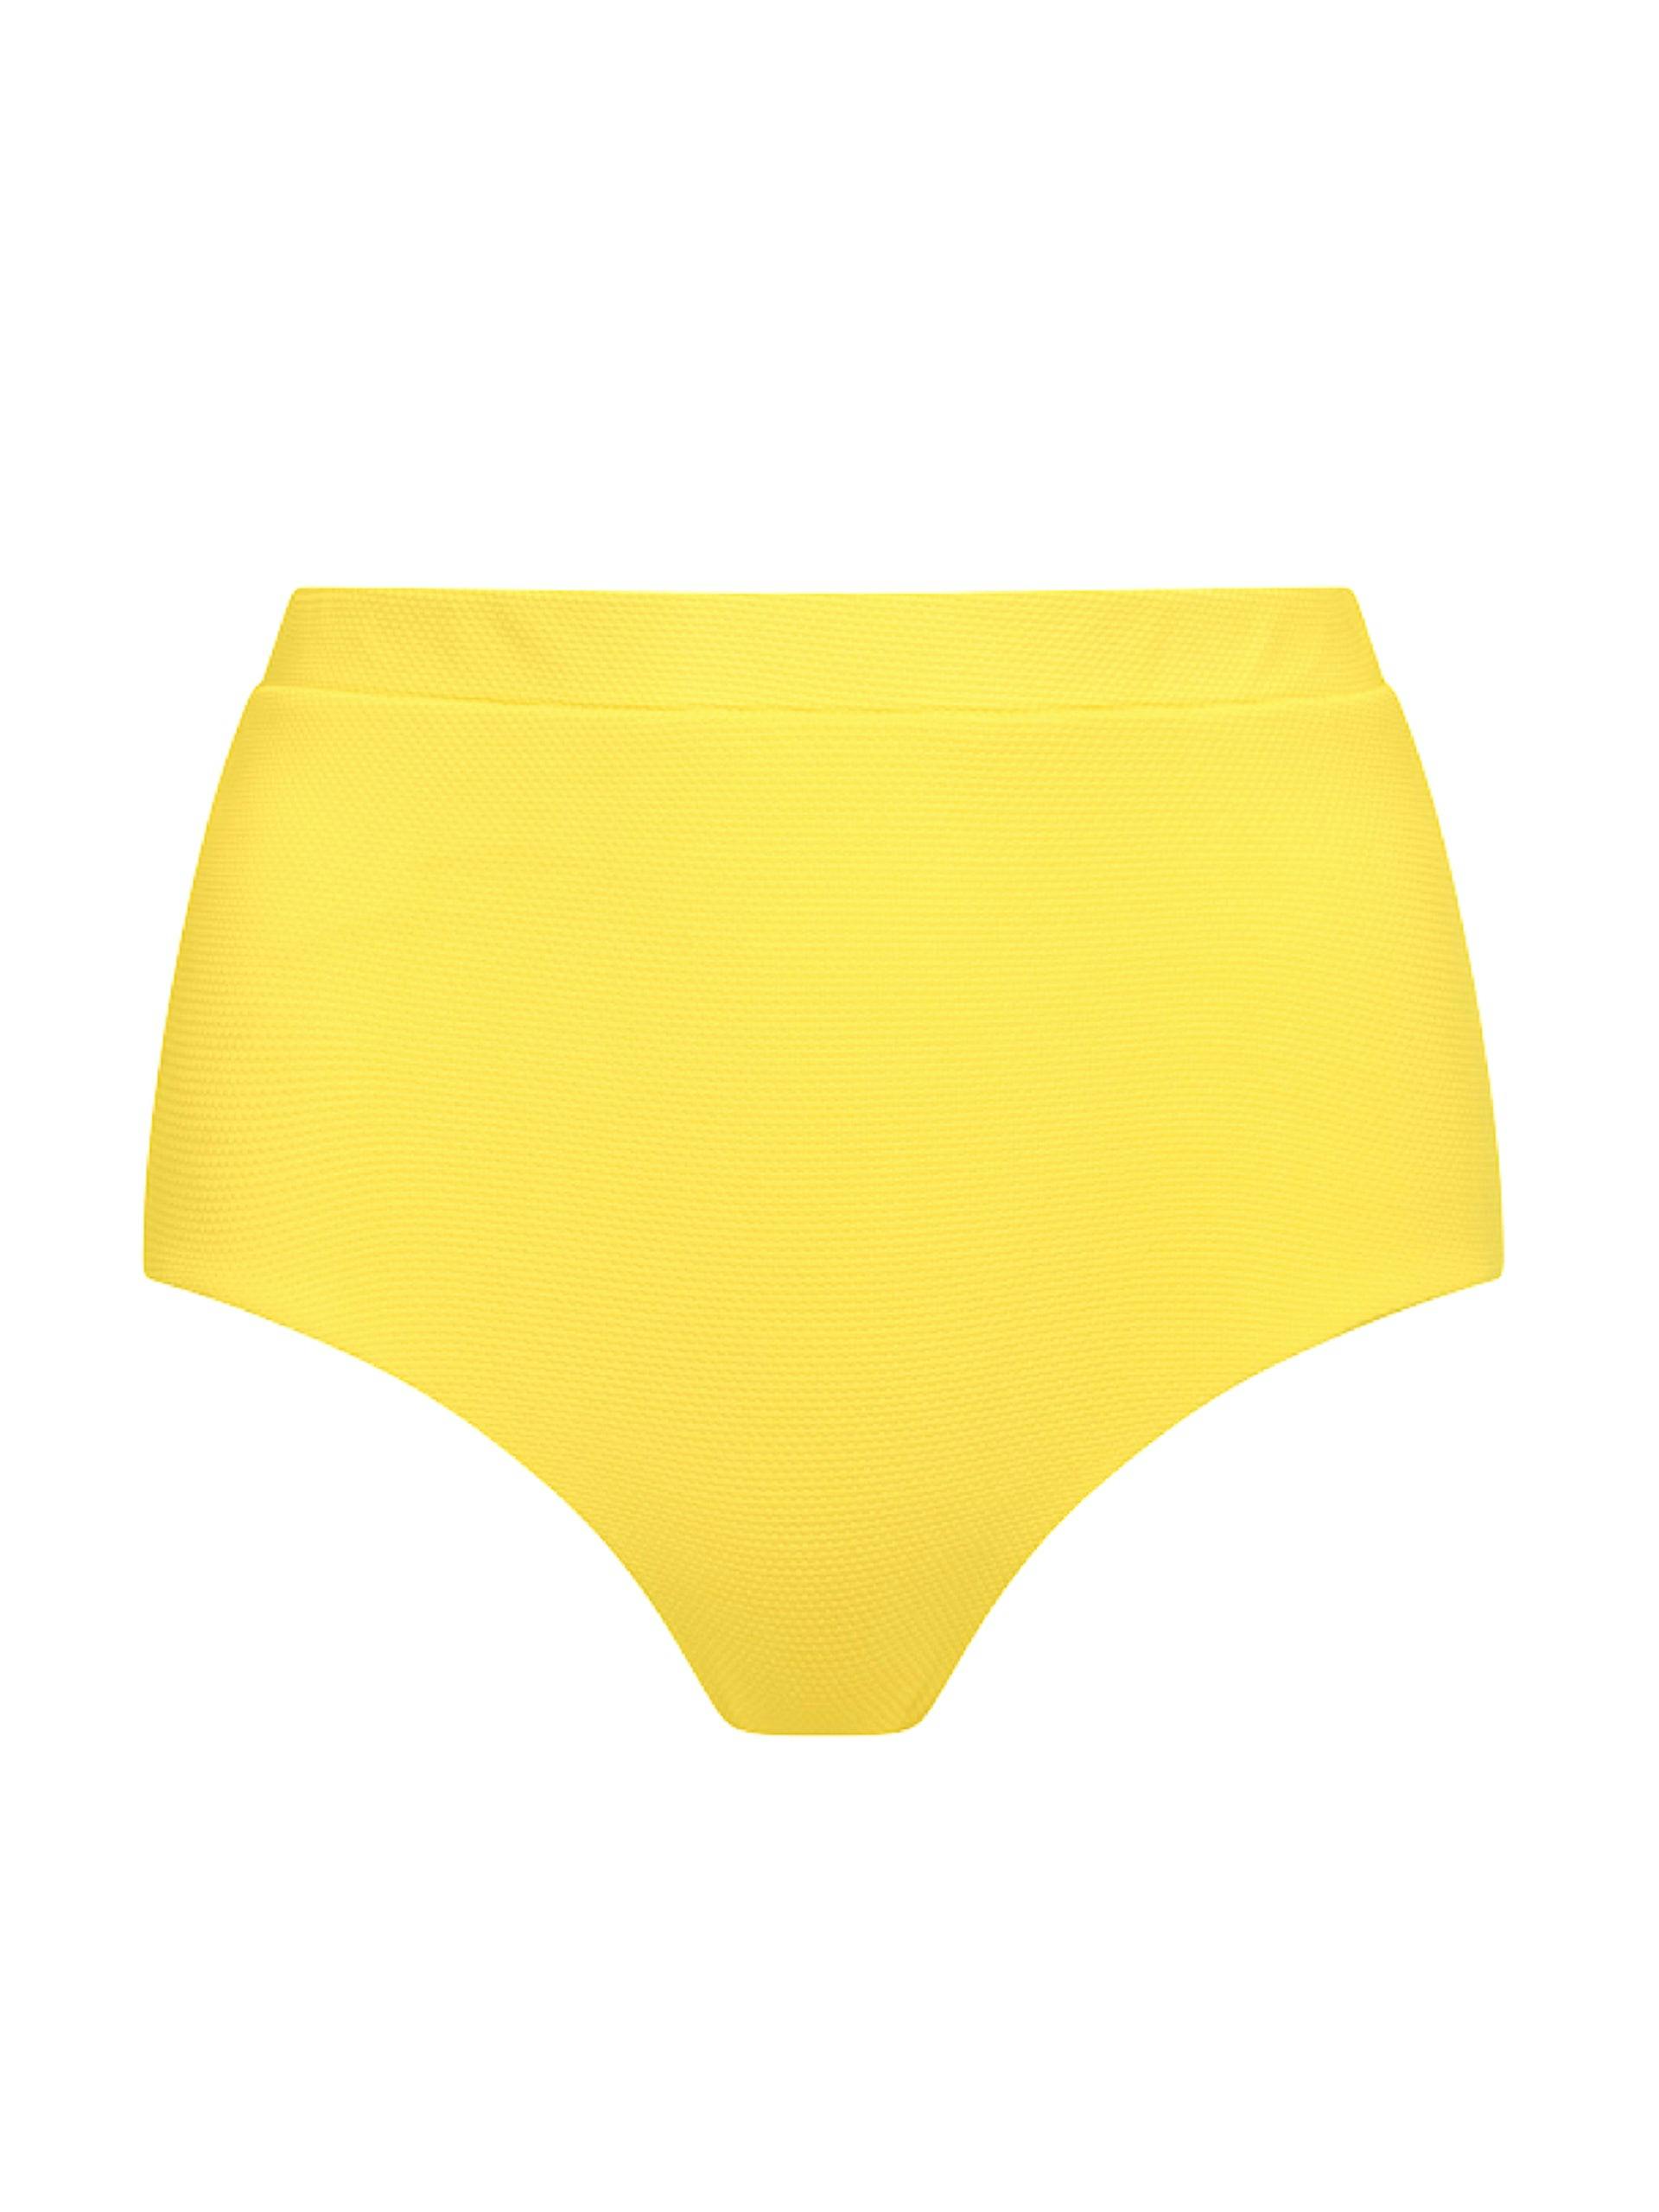 Citron yellow Lucinda high-waisted bikini bottom